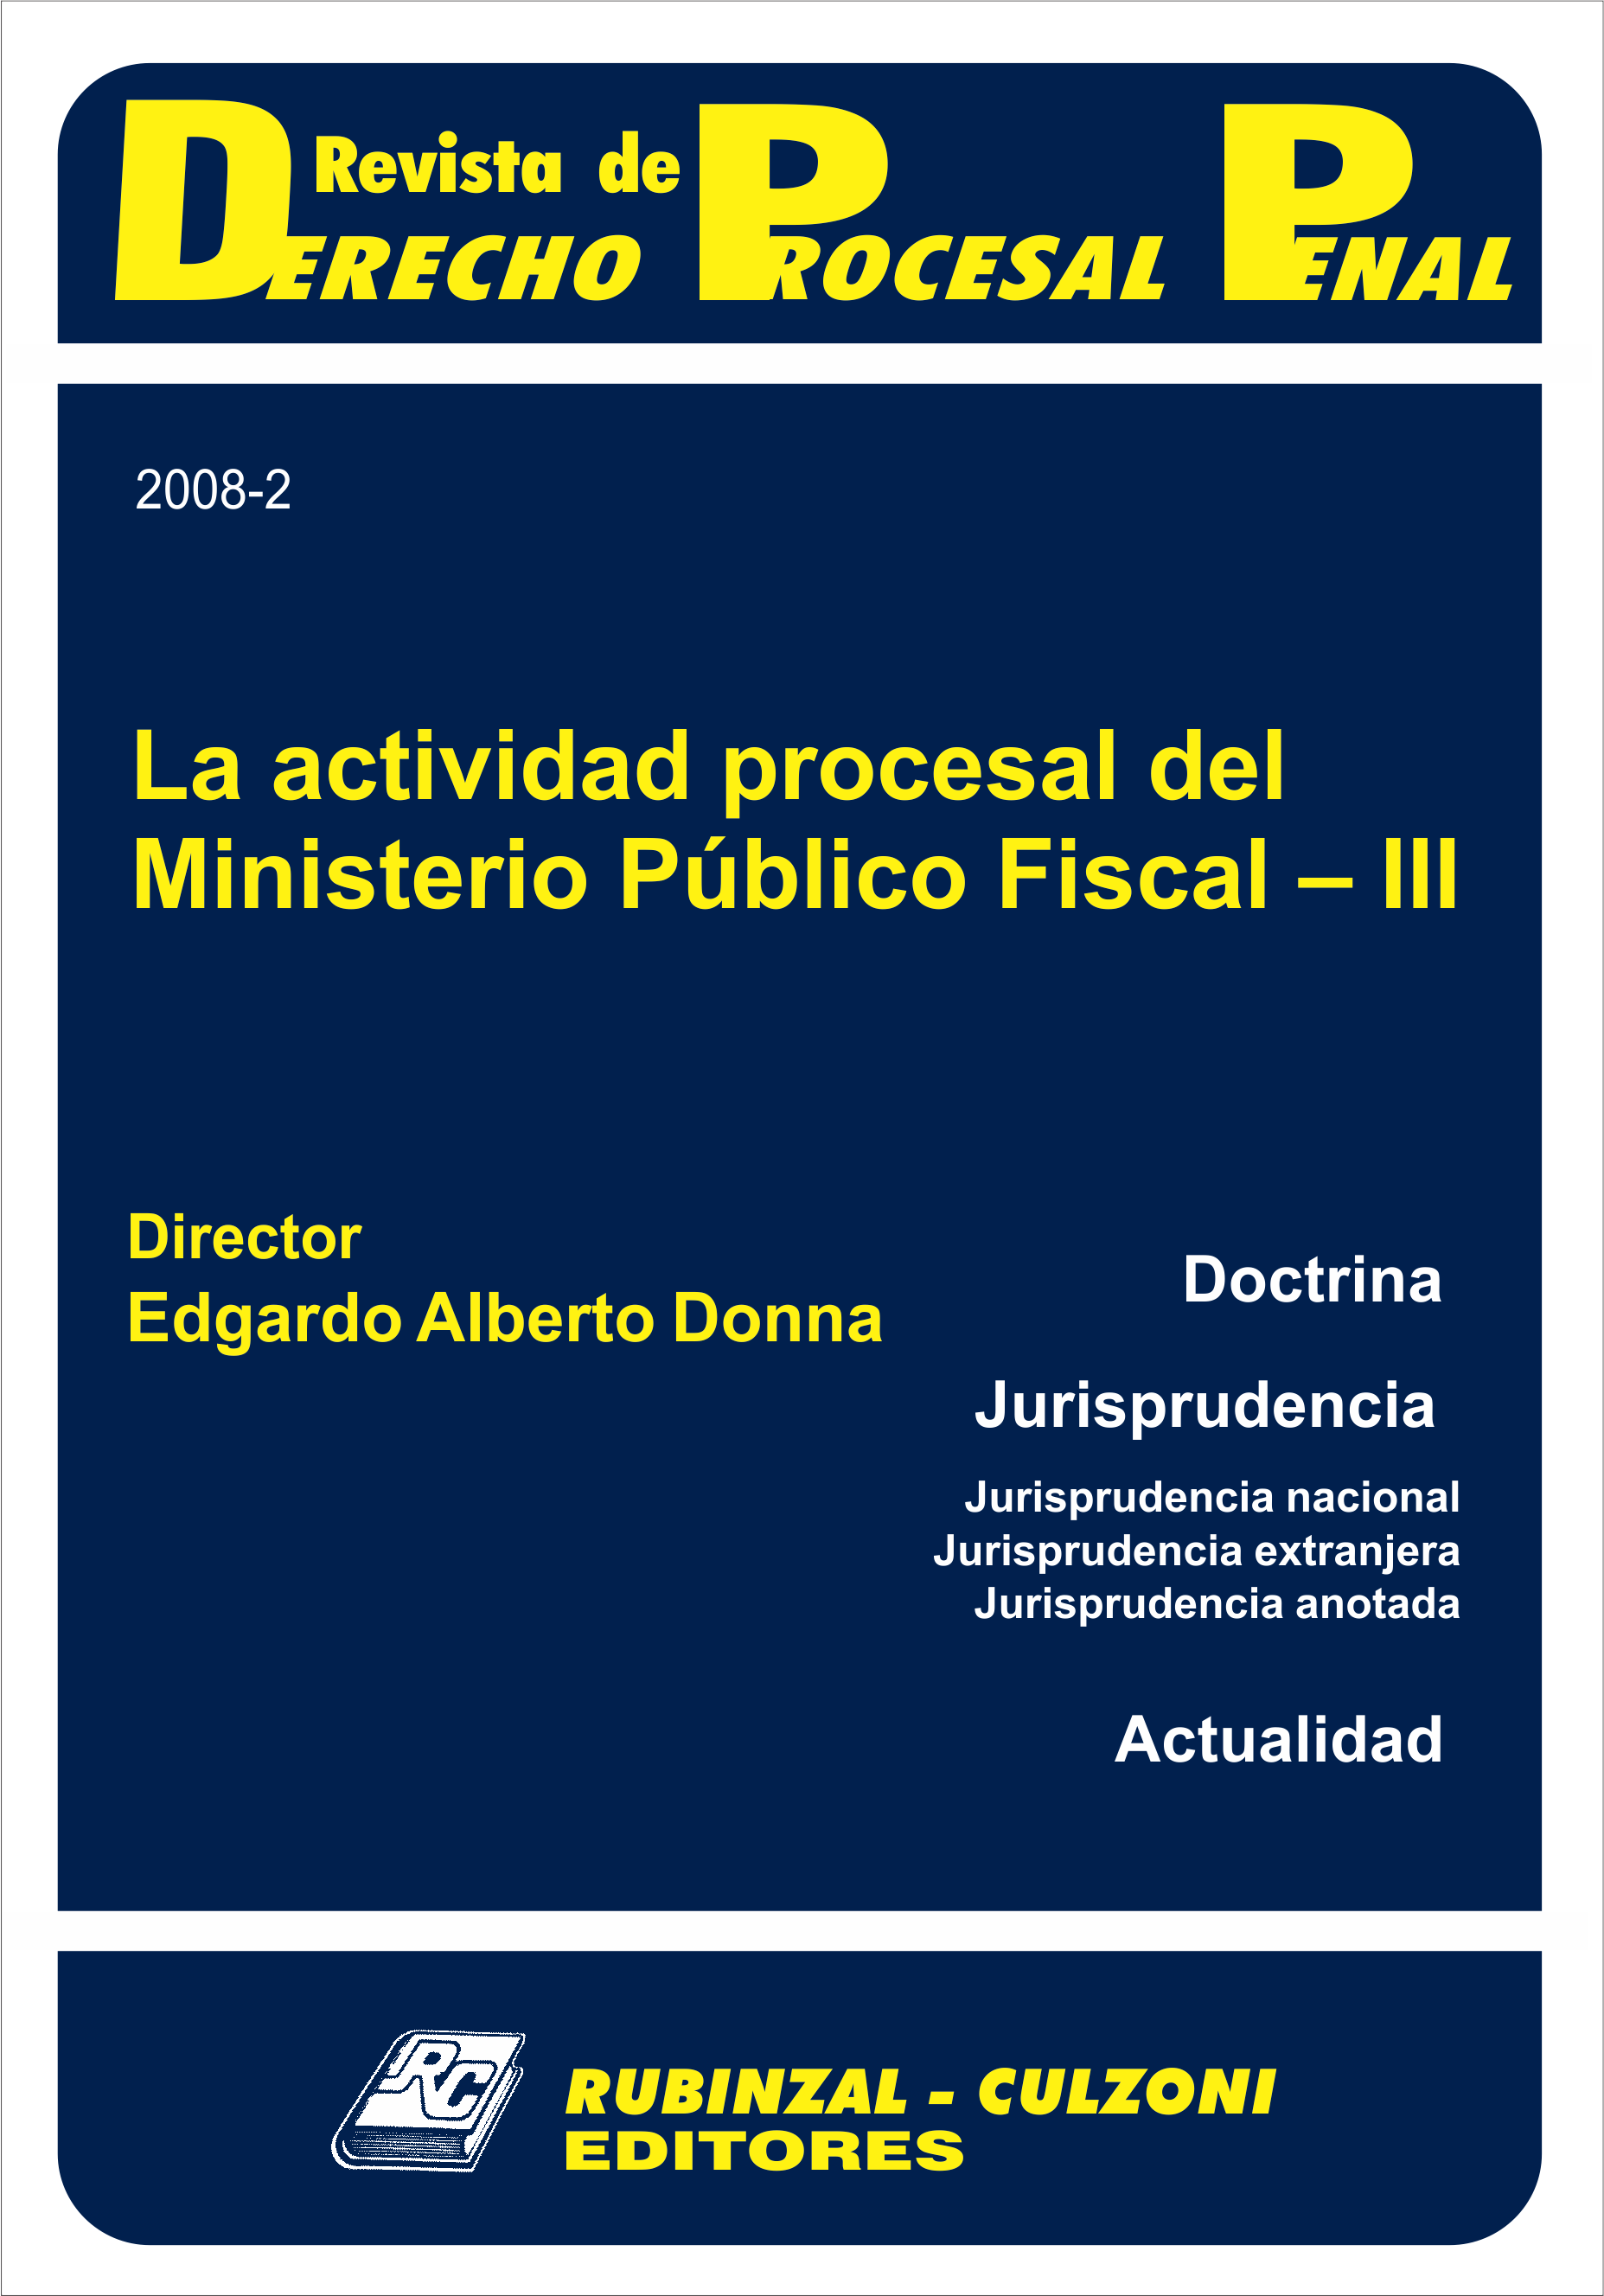 Revista de Derecho Procesal Penal - La actividad procesal del Ministerio Público Fiscal - III